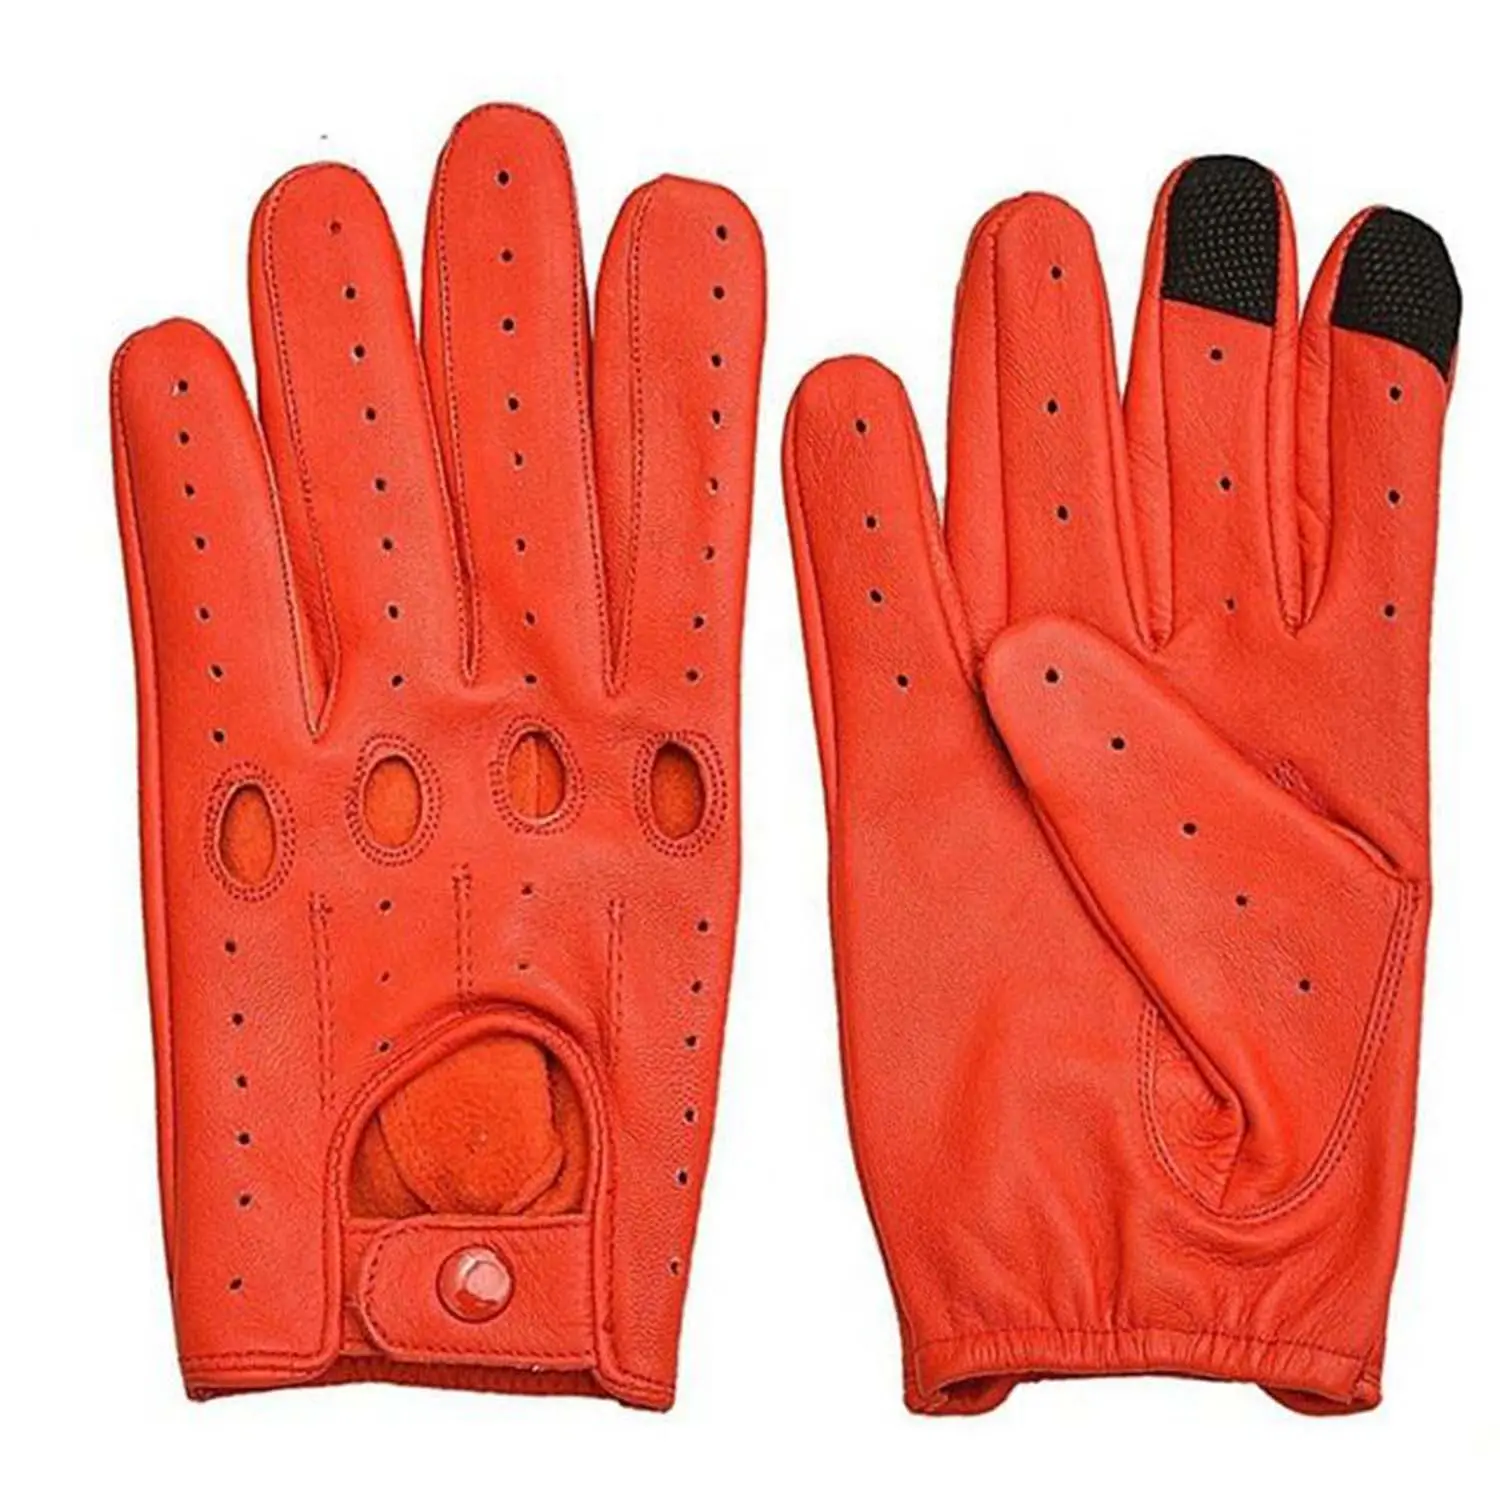 Premium-Qualität Männer fahren stilvolle Reit handschuhe Anti-Rutsch-Touchscreen Leder Racing Drifting Handschuhe